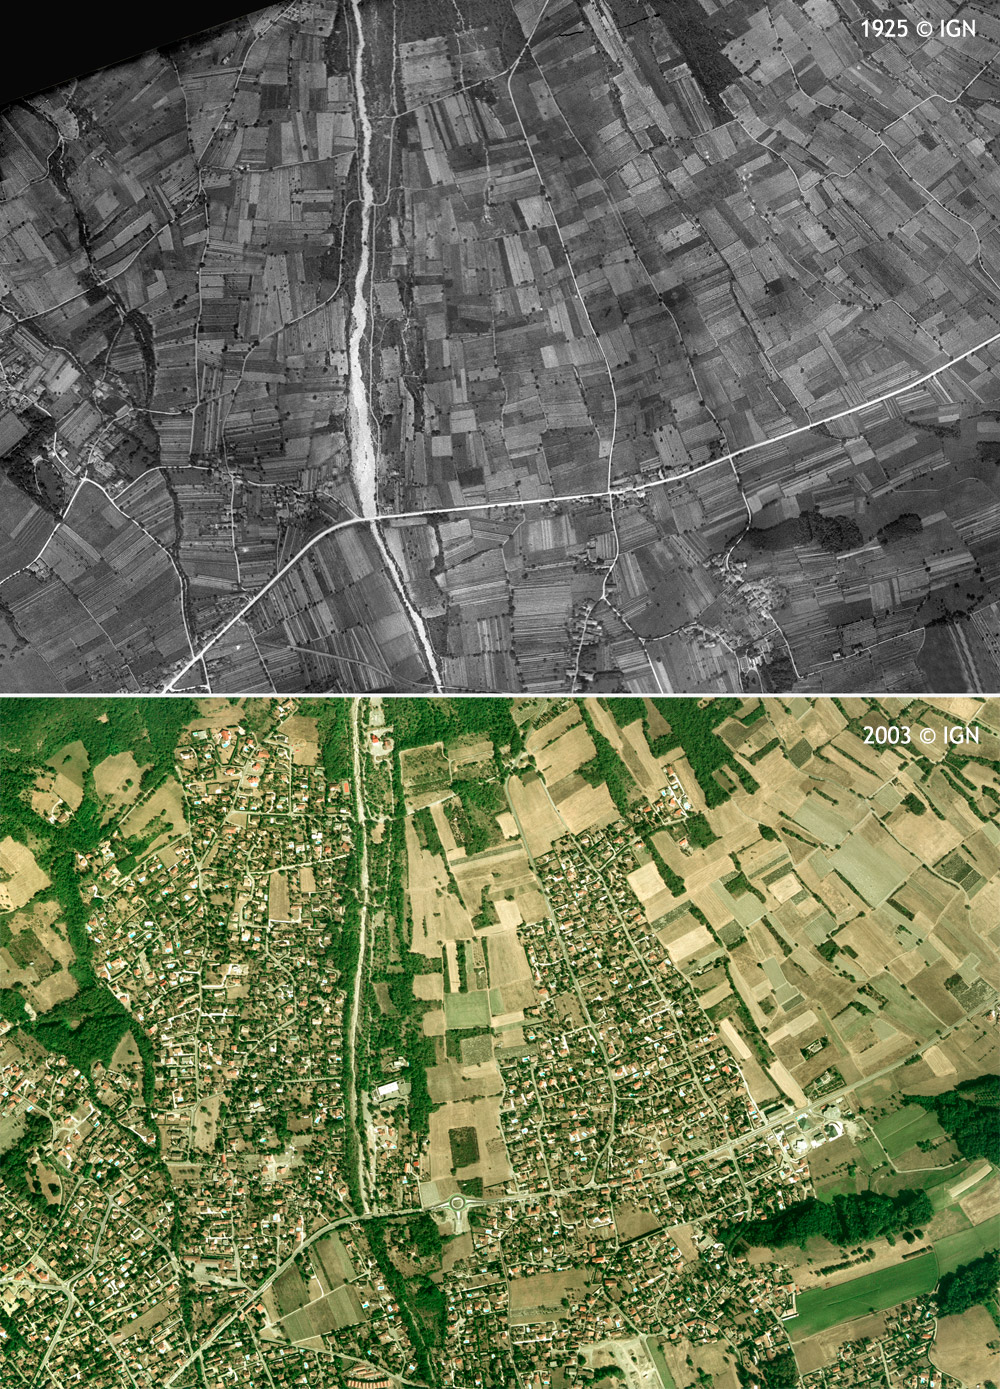 Evolution de l'urbanisation sur le cne de djection du manival entre 1925 et 2003 en amont et en aval de l'actuelle route dpartementale 1090